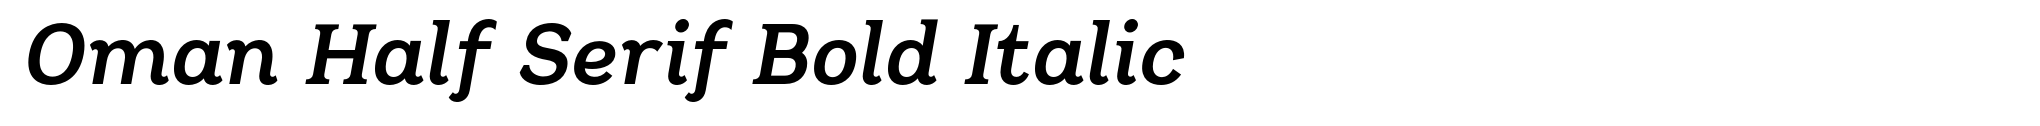 Oman Half Serif Bold Italic image